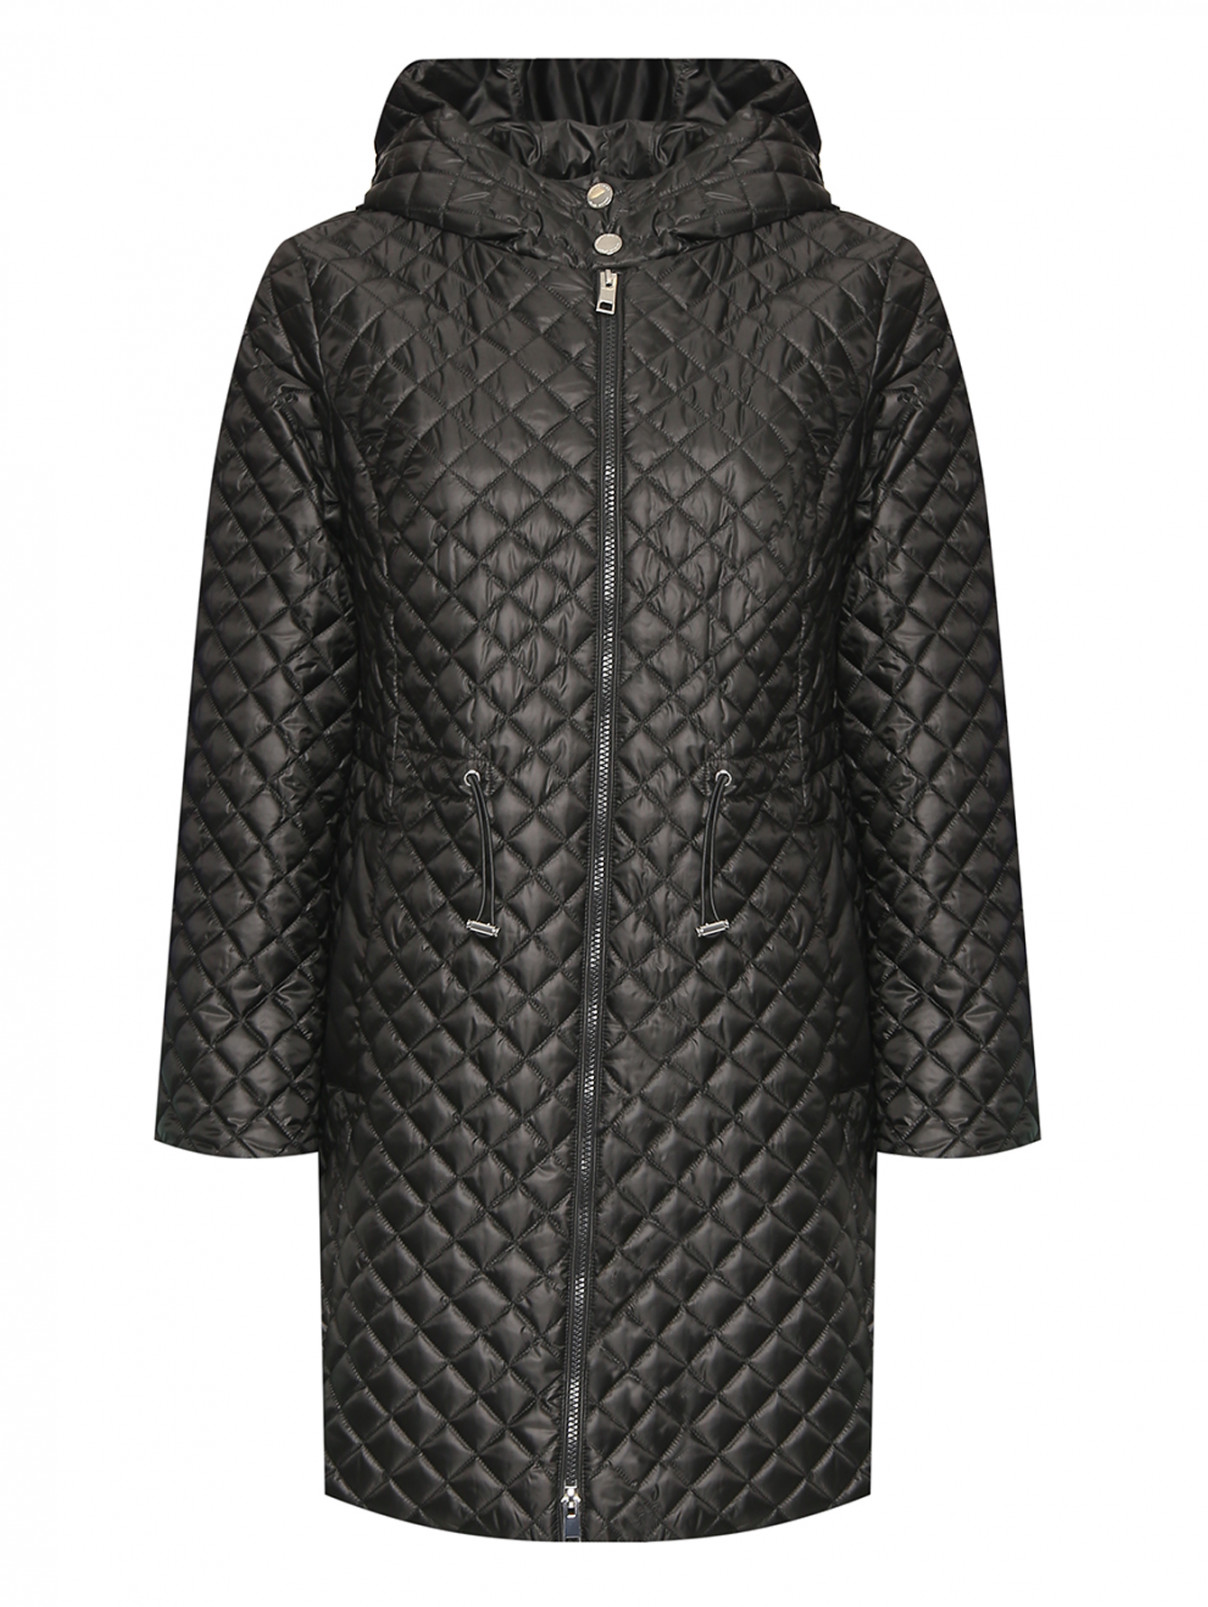 Удлиненная стеганая куртка с капюшоном Marina Rinaldi  –  Общий вид  – Цвет:  Черный